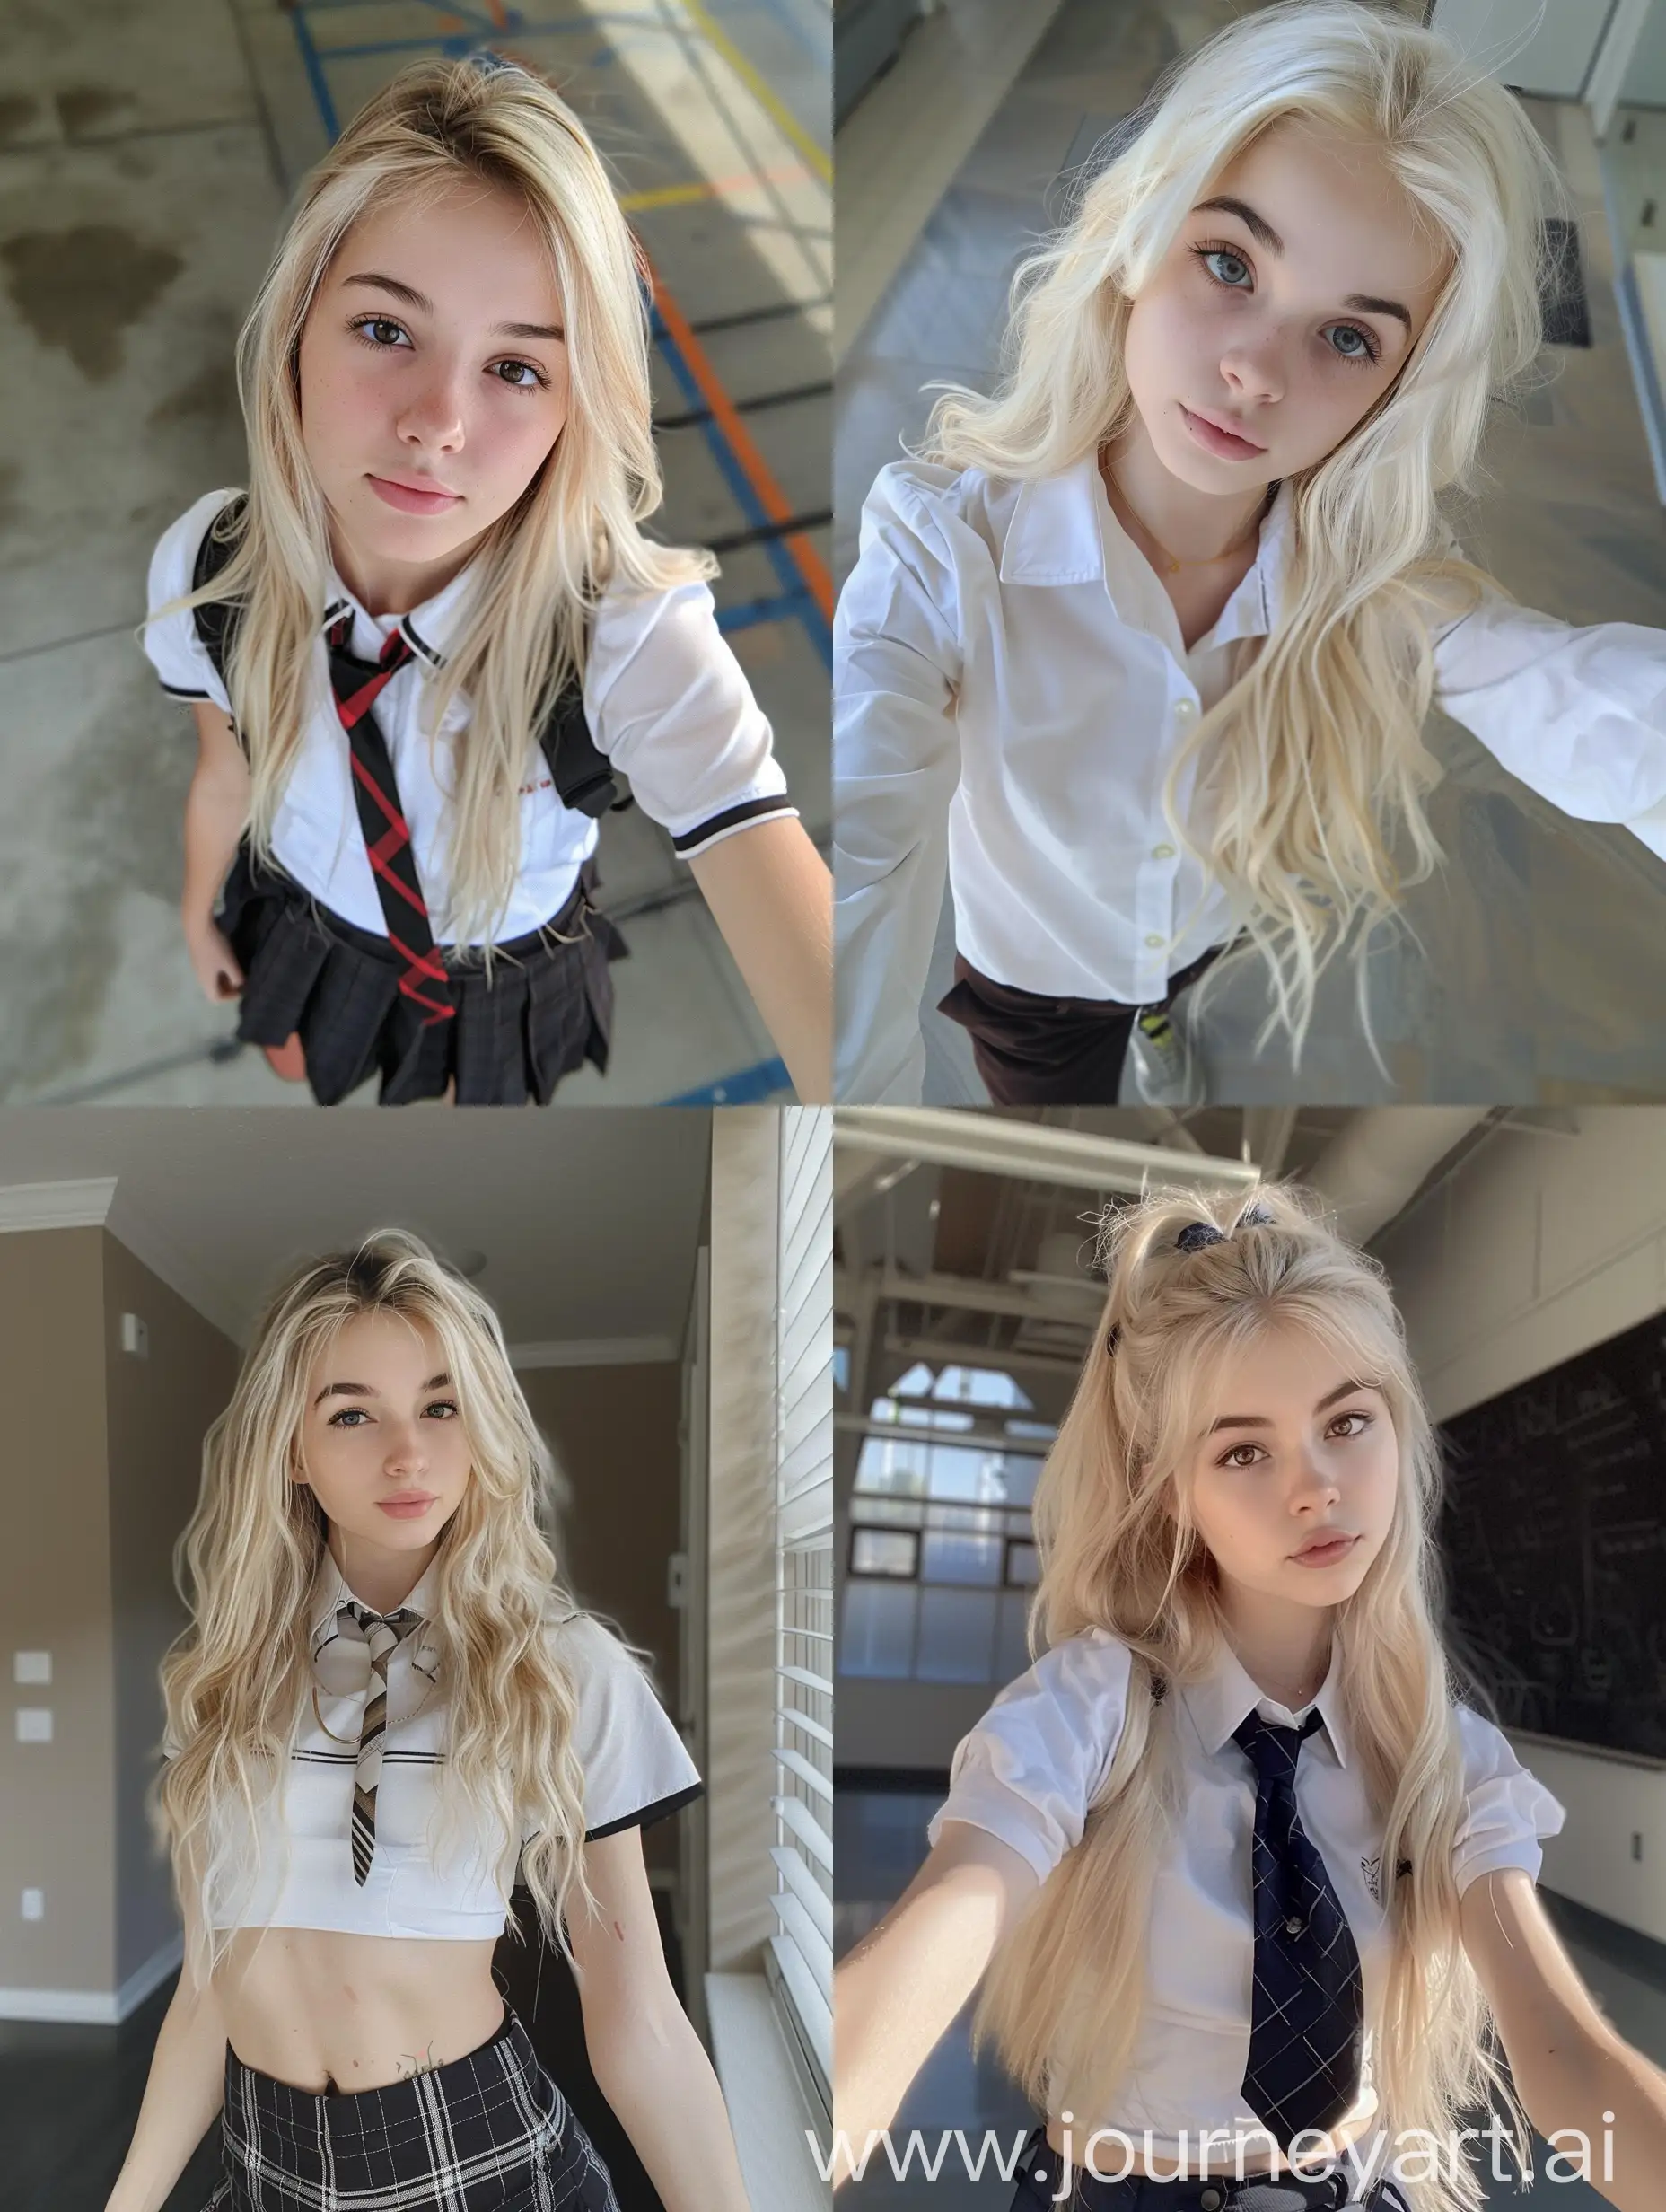 Blonde-Teenage-Girl-Taking-Natural-Selfie-with-iPhone-in-School-Uniform